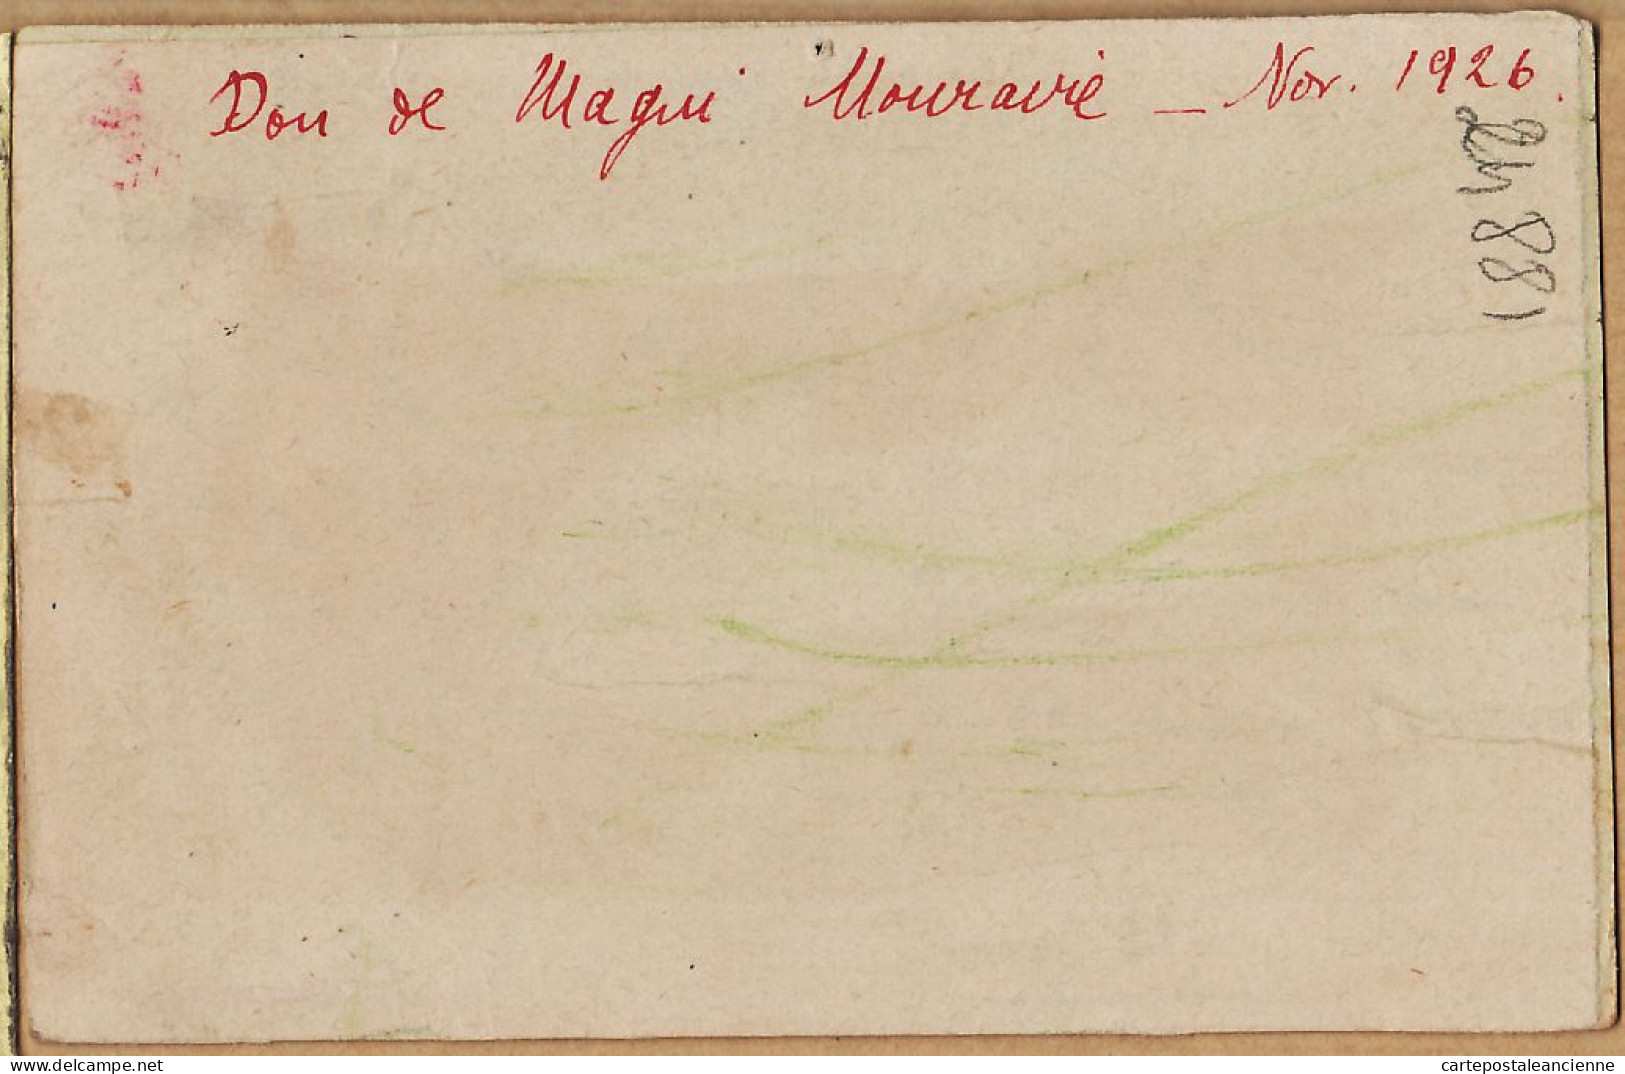 26412 / ⭐ ALGER Pièce D'eau Parc GALLAND "Don De Magui MOURAVIE Novembre 1926 Algérie - Alger